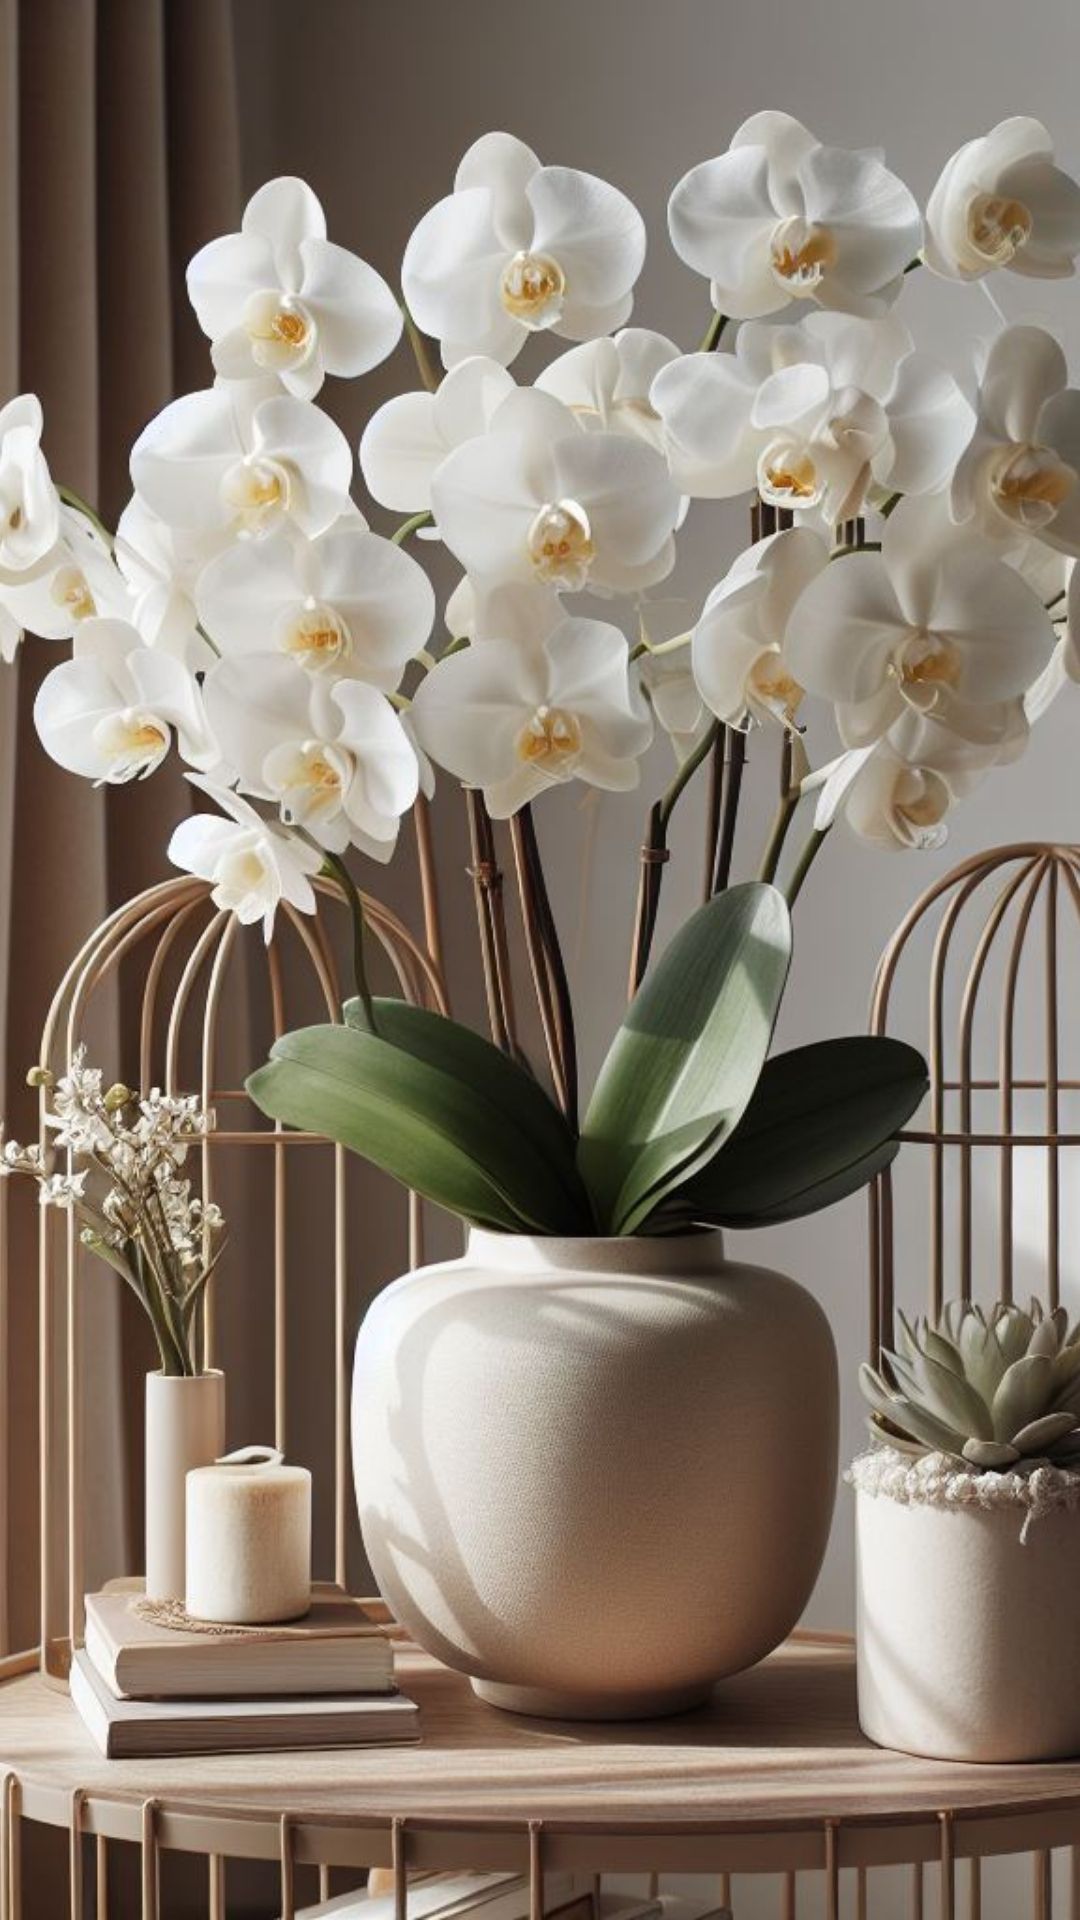 O Encanto das Orquídeas: Beleza e Mistério em Cada Flor